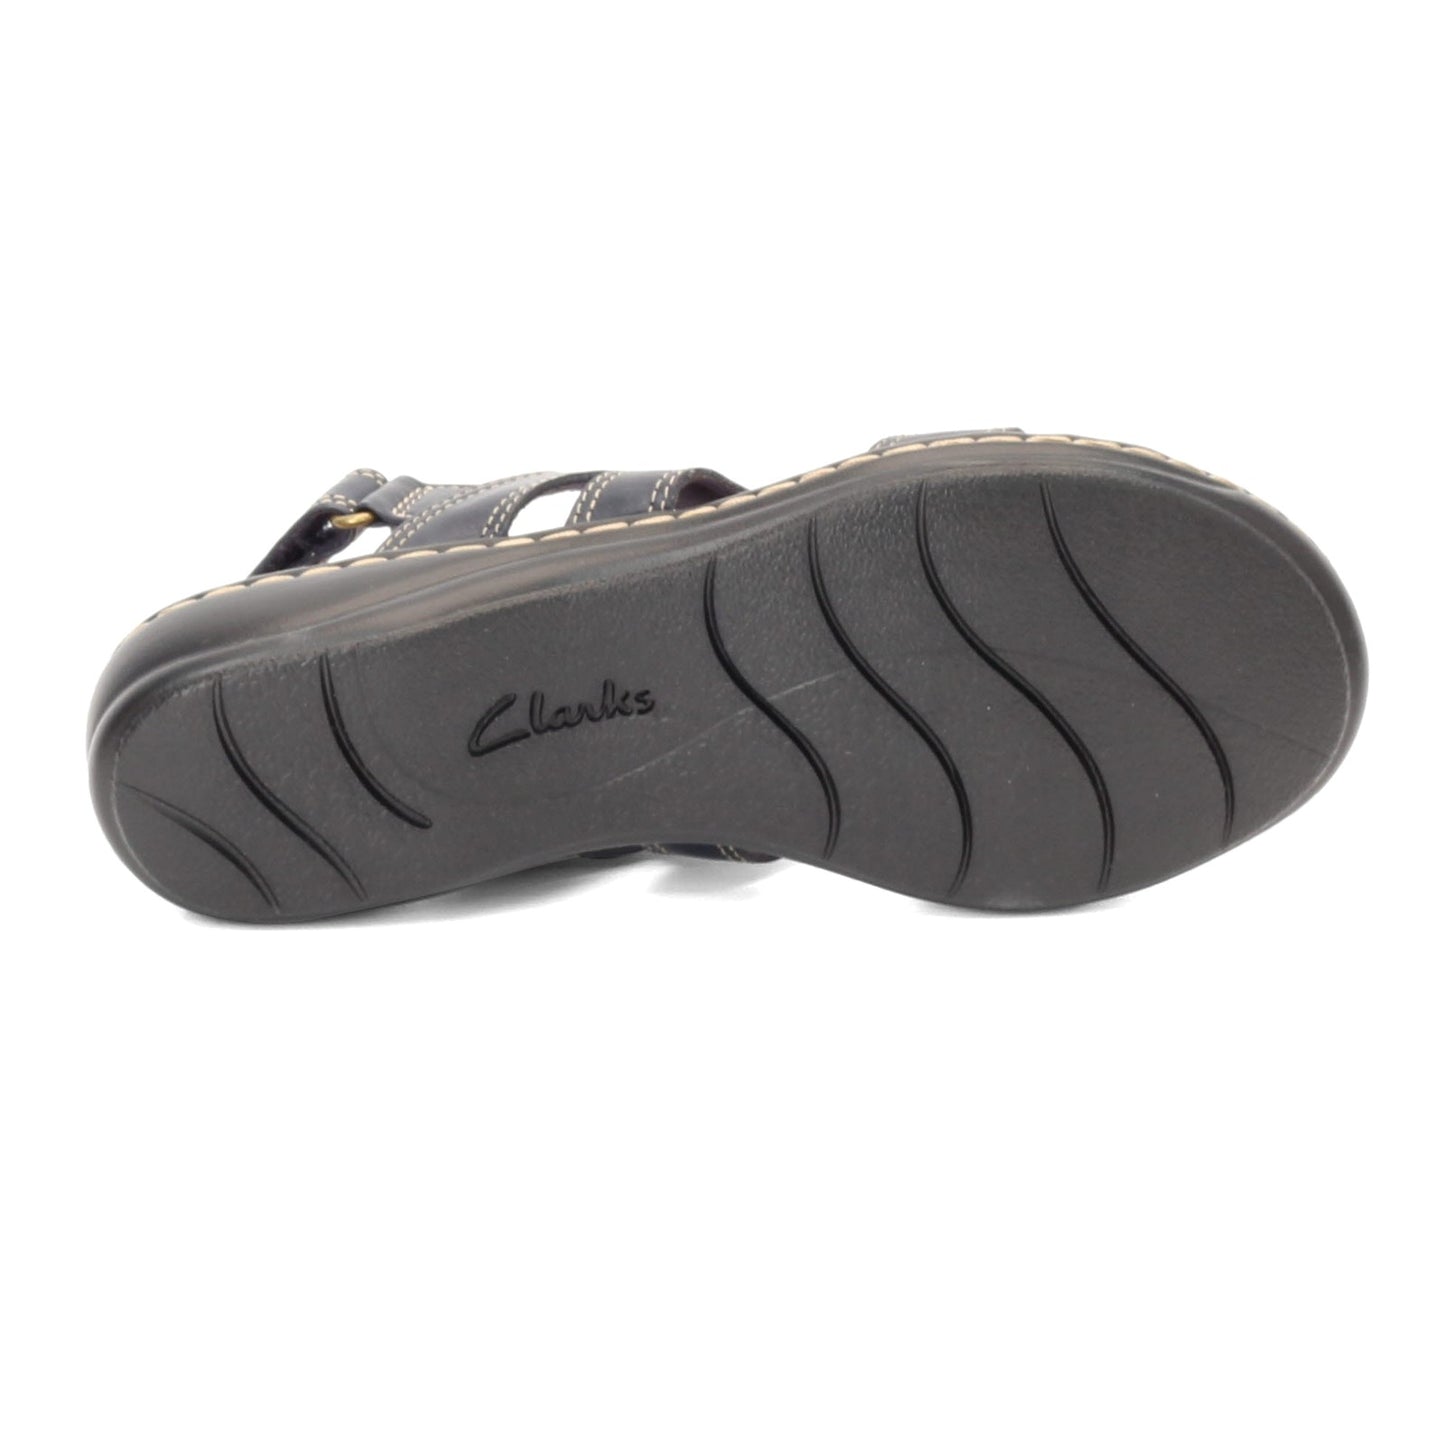 Peltz Shoes  Women's Clarks Leisa Skip Sandal NAVY 26142996